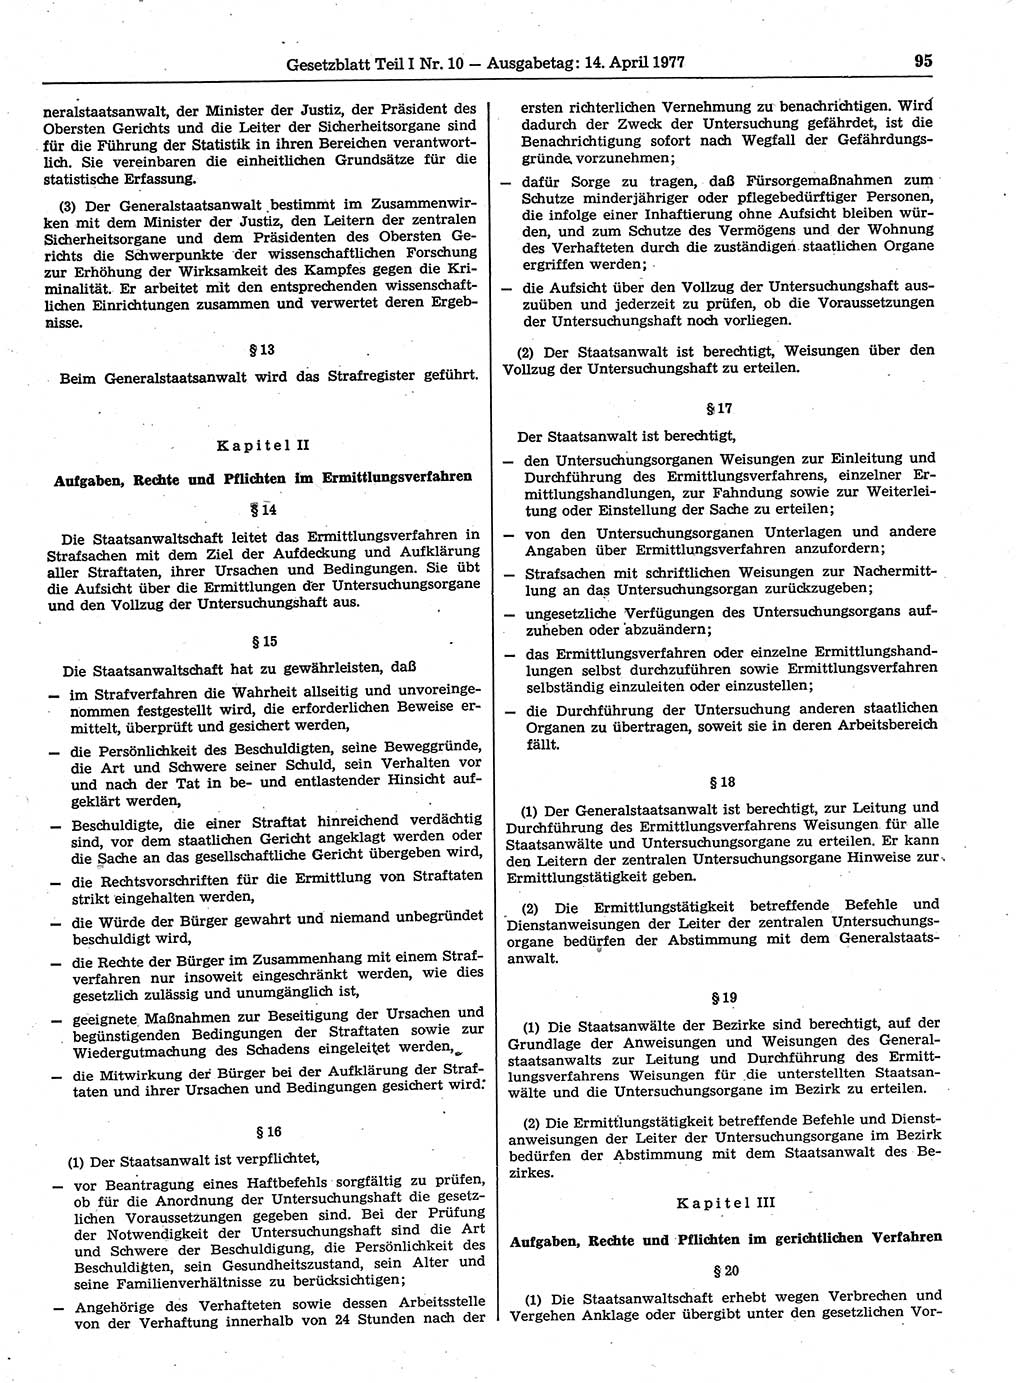 Gesetzblatt (GBl.) der Deutschen Demokratischen Republik (DDR) Teil Ⅰ 1977, Seite 95 (GBl. DDR Ⅰ 1977, S. 95)